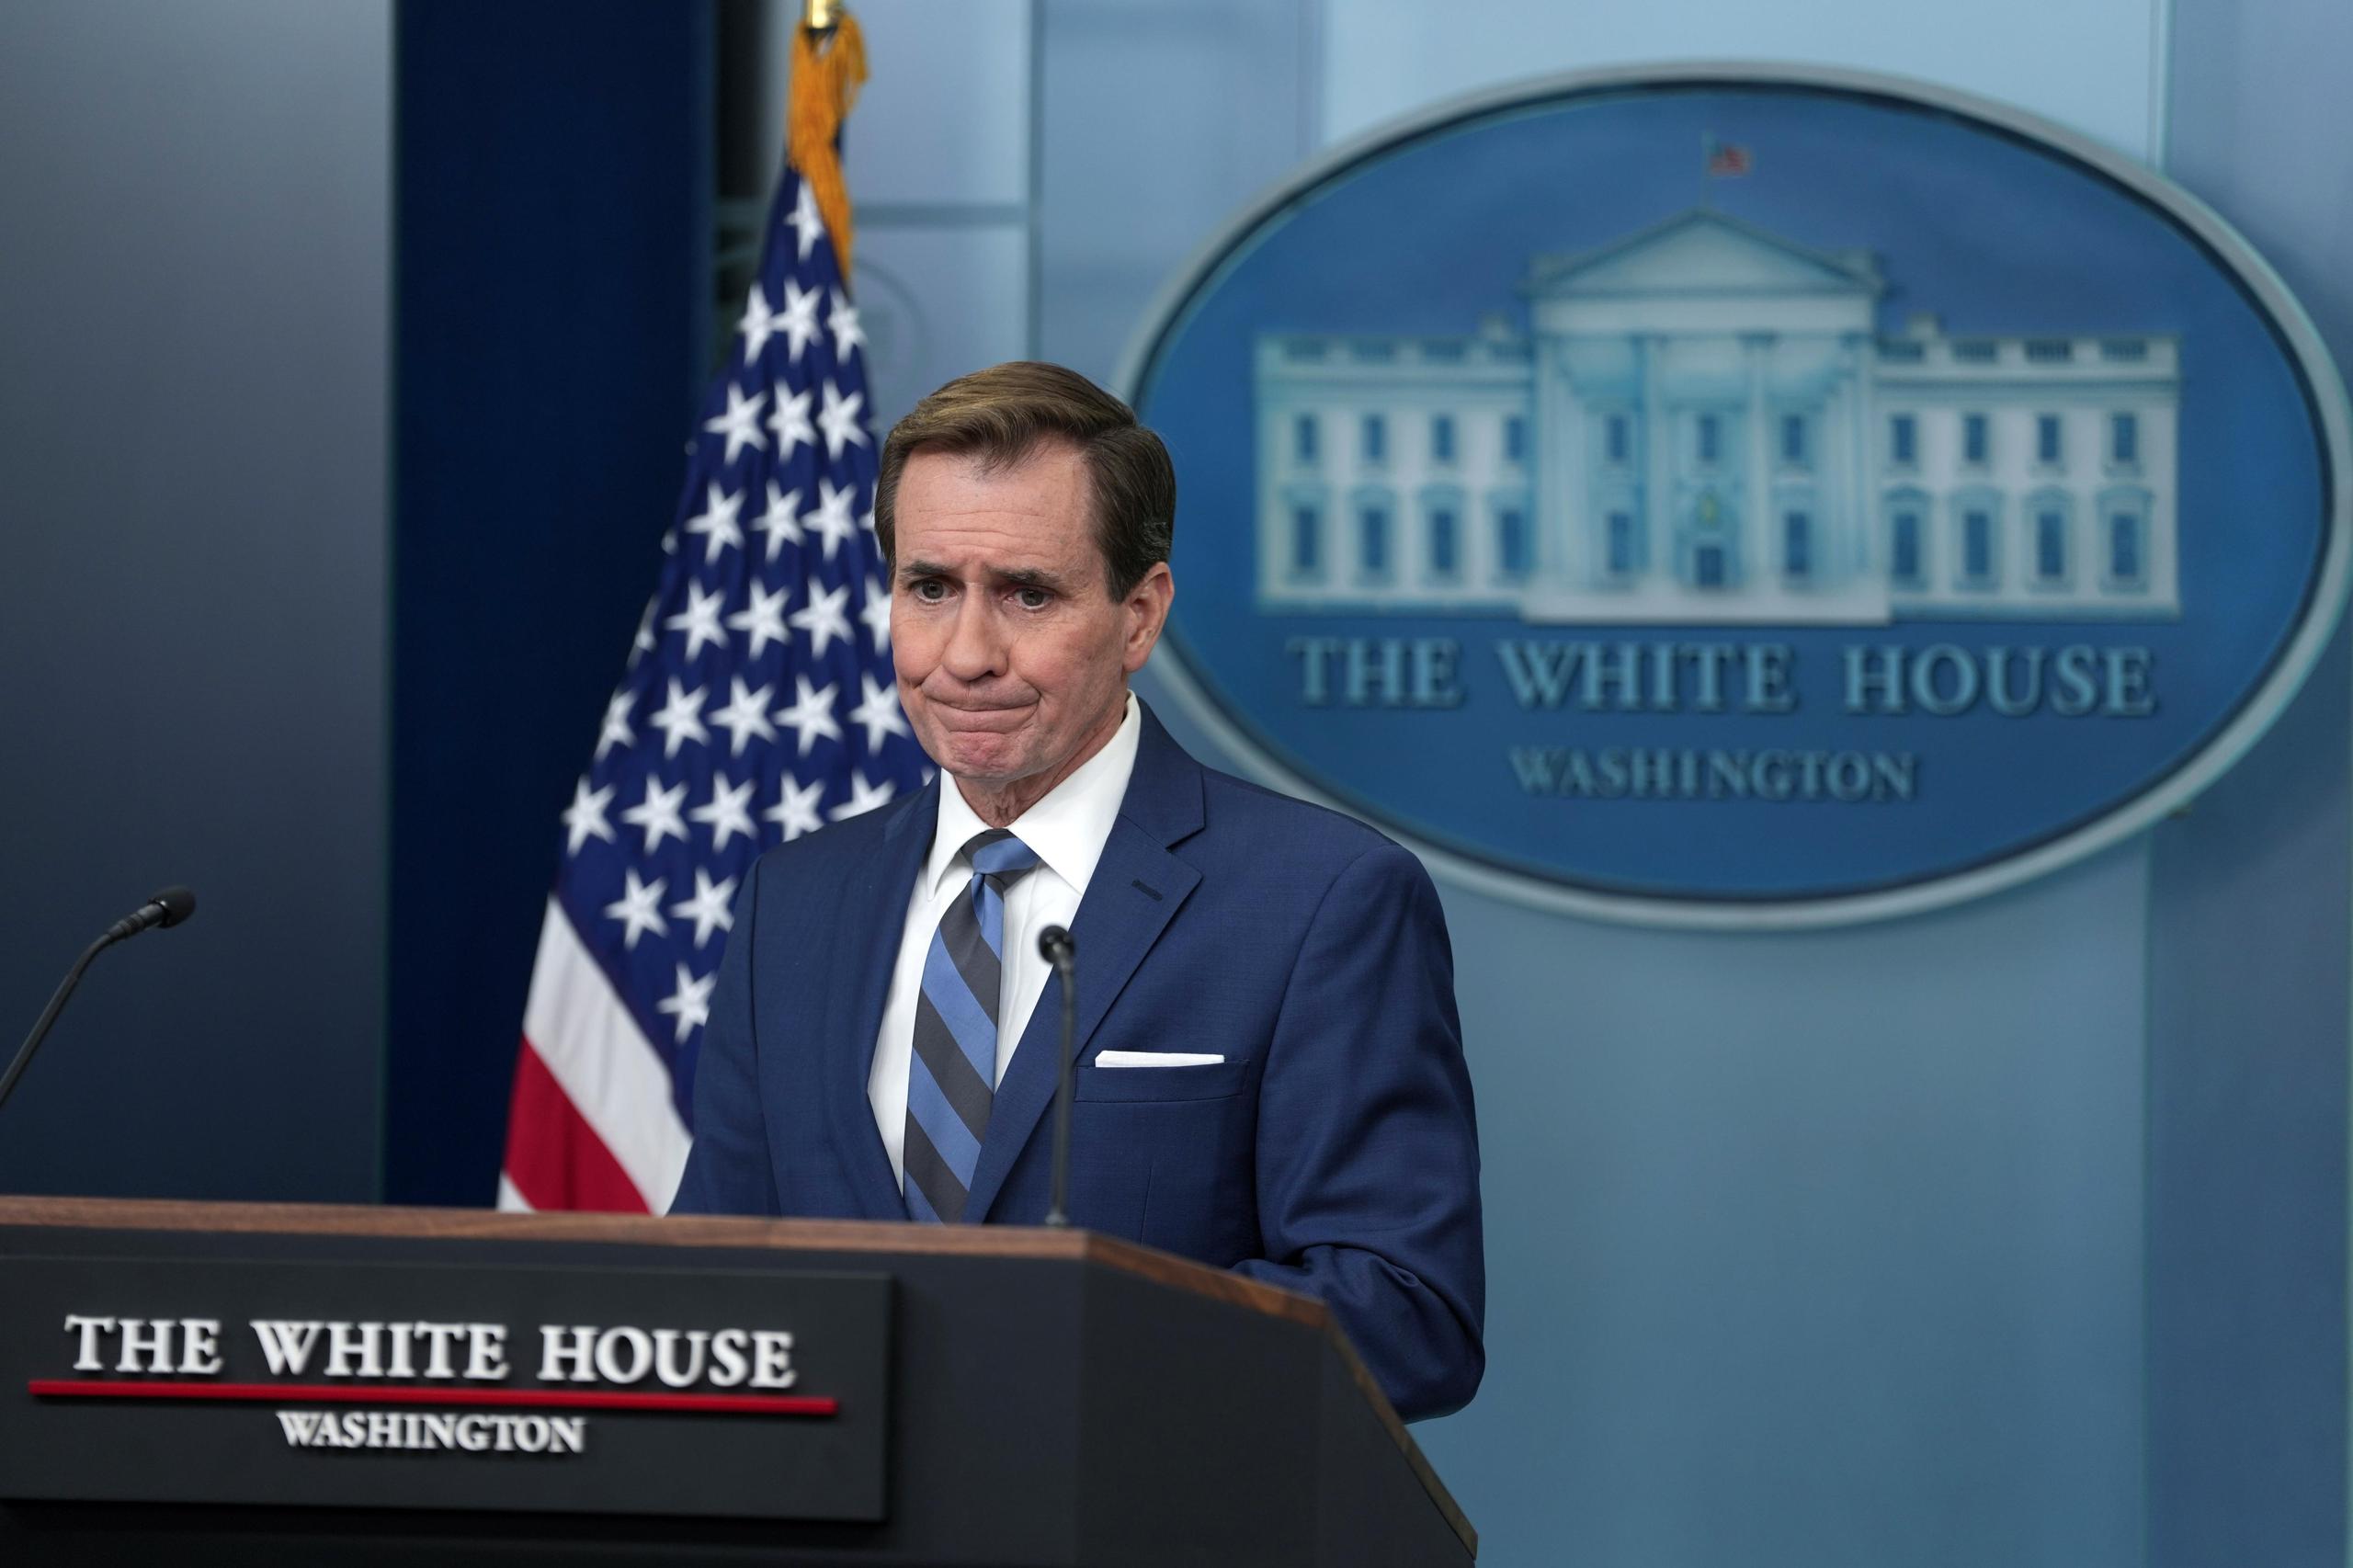 El portavoz del Consejo de Seguridad de la Casa Blanca, John Kirby, pidió perdón por haber asegurado falsamente el pasado viernes que Washington había informado al Gobierno iraquí que iba a bombardear la zona.